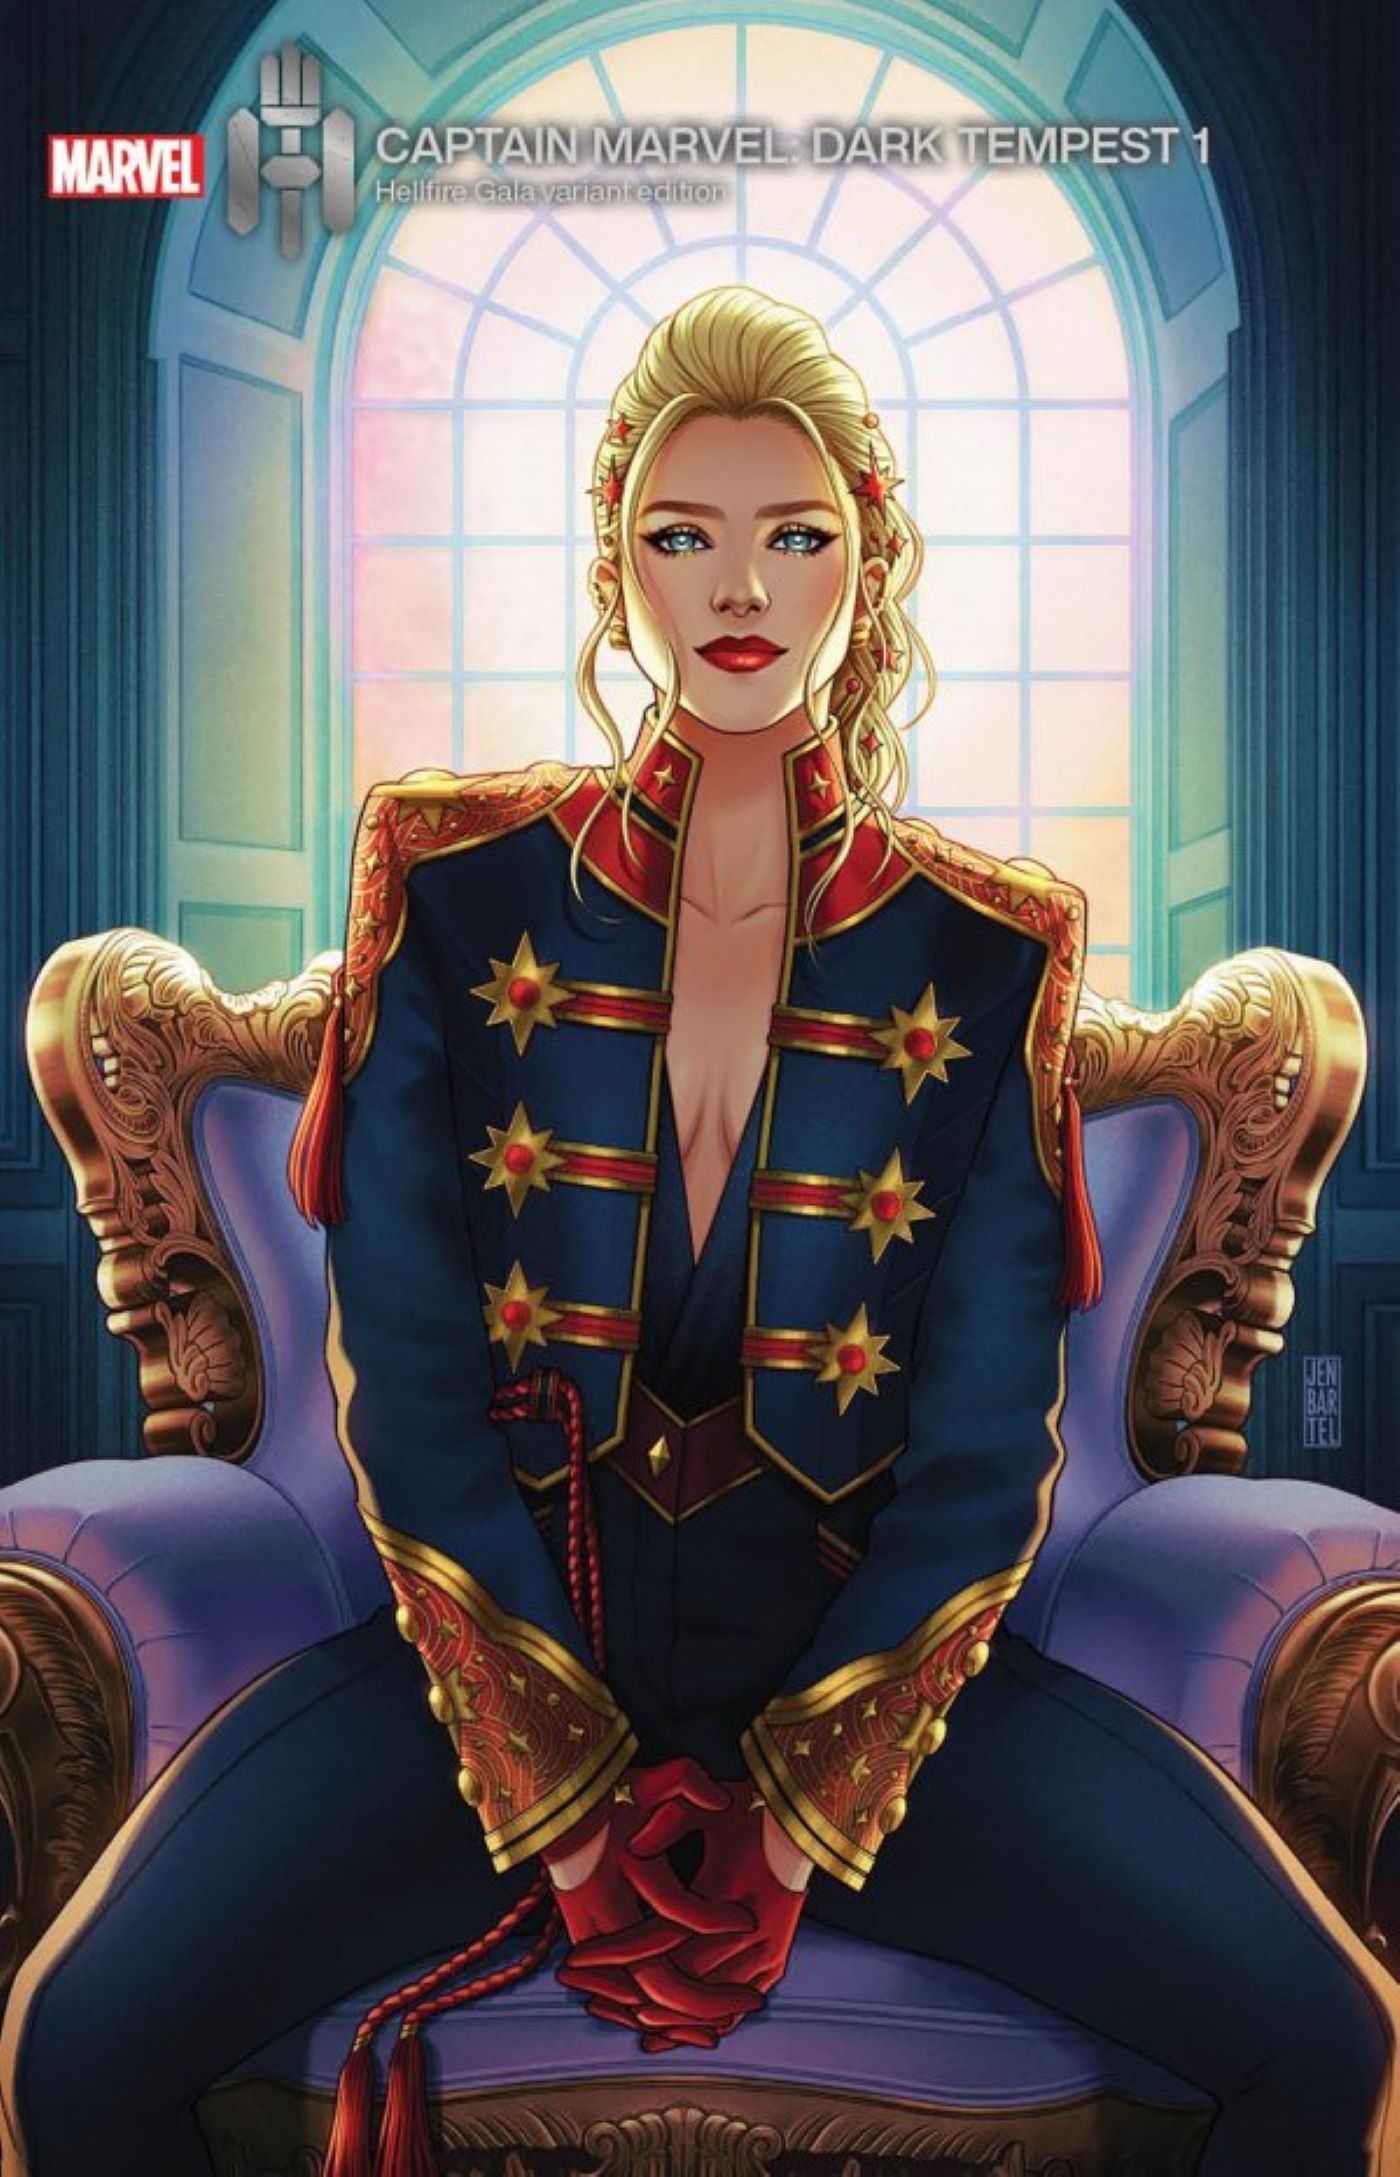 Captain Marvel Cosplay Showcases Her New Costume as Avengers Leader